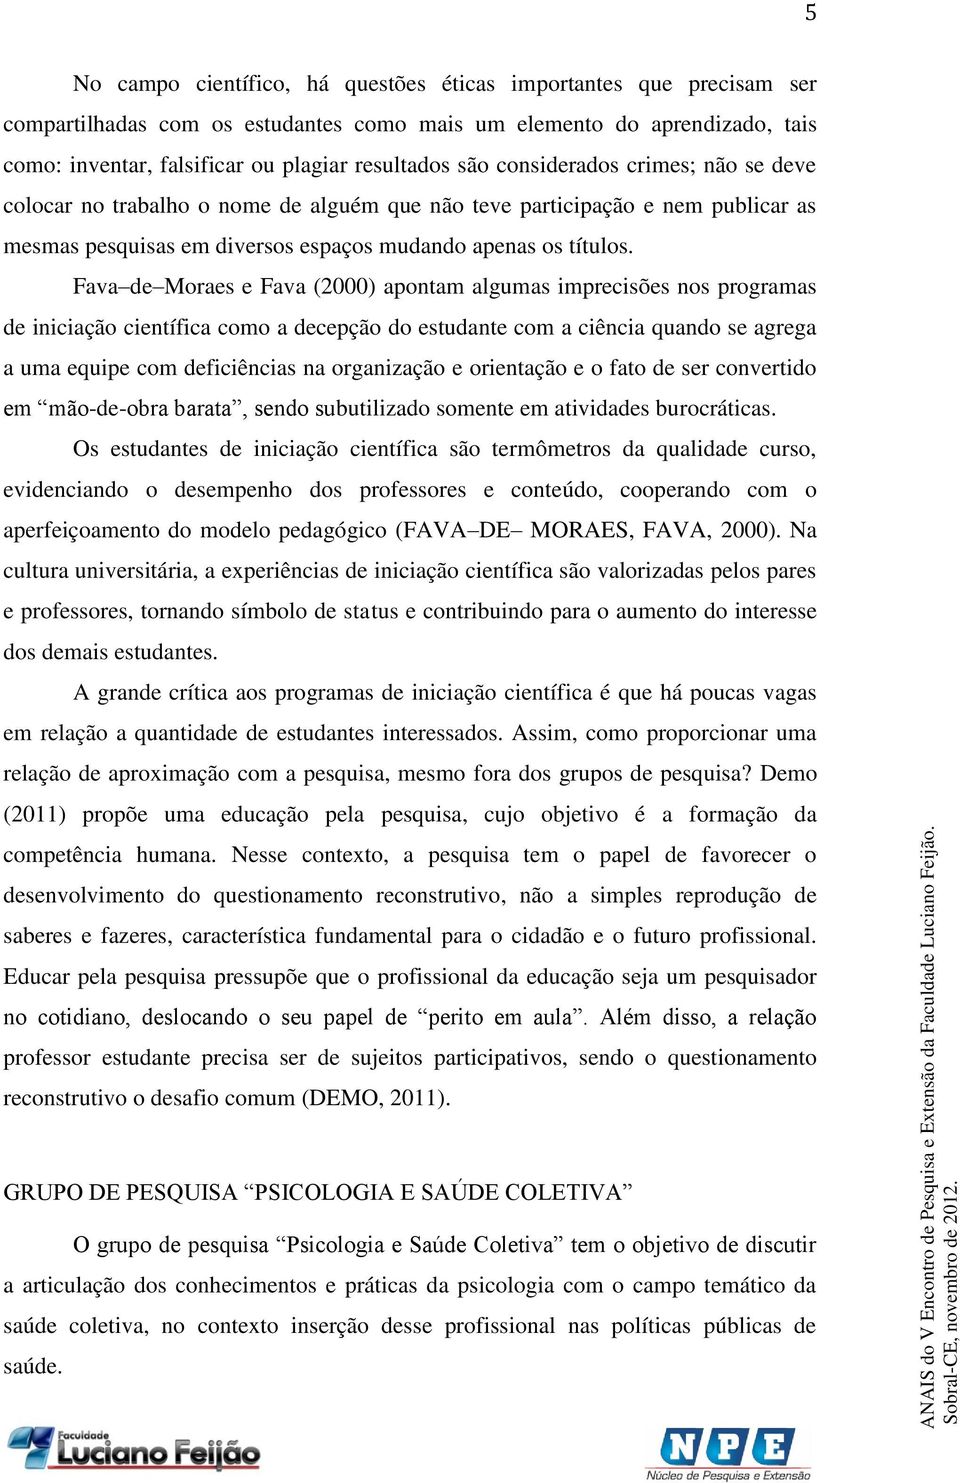 Fava de Moraes e Fava (2000) apontam algumas imprecisões nos programas de iniciação científica como a decepção do estudante com a ciência quando se agrega a uma equipe com deficiências na organização